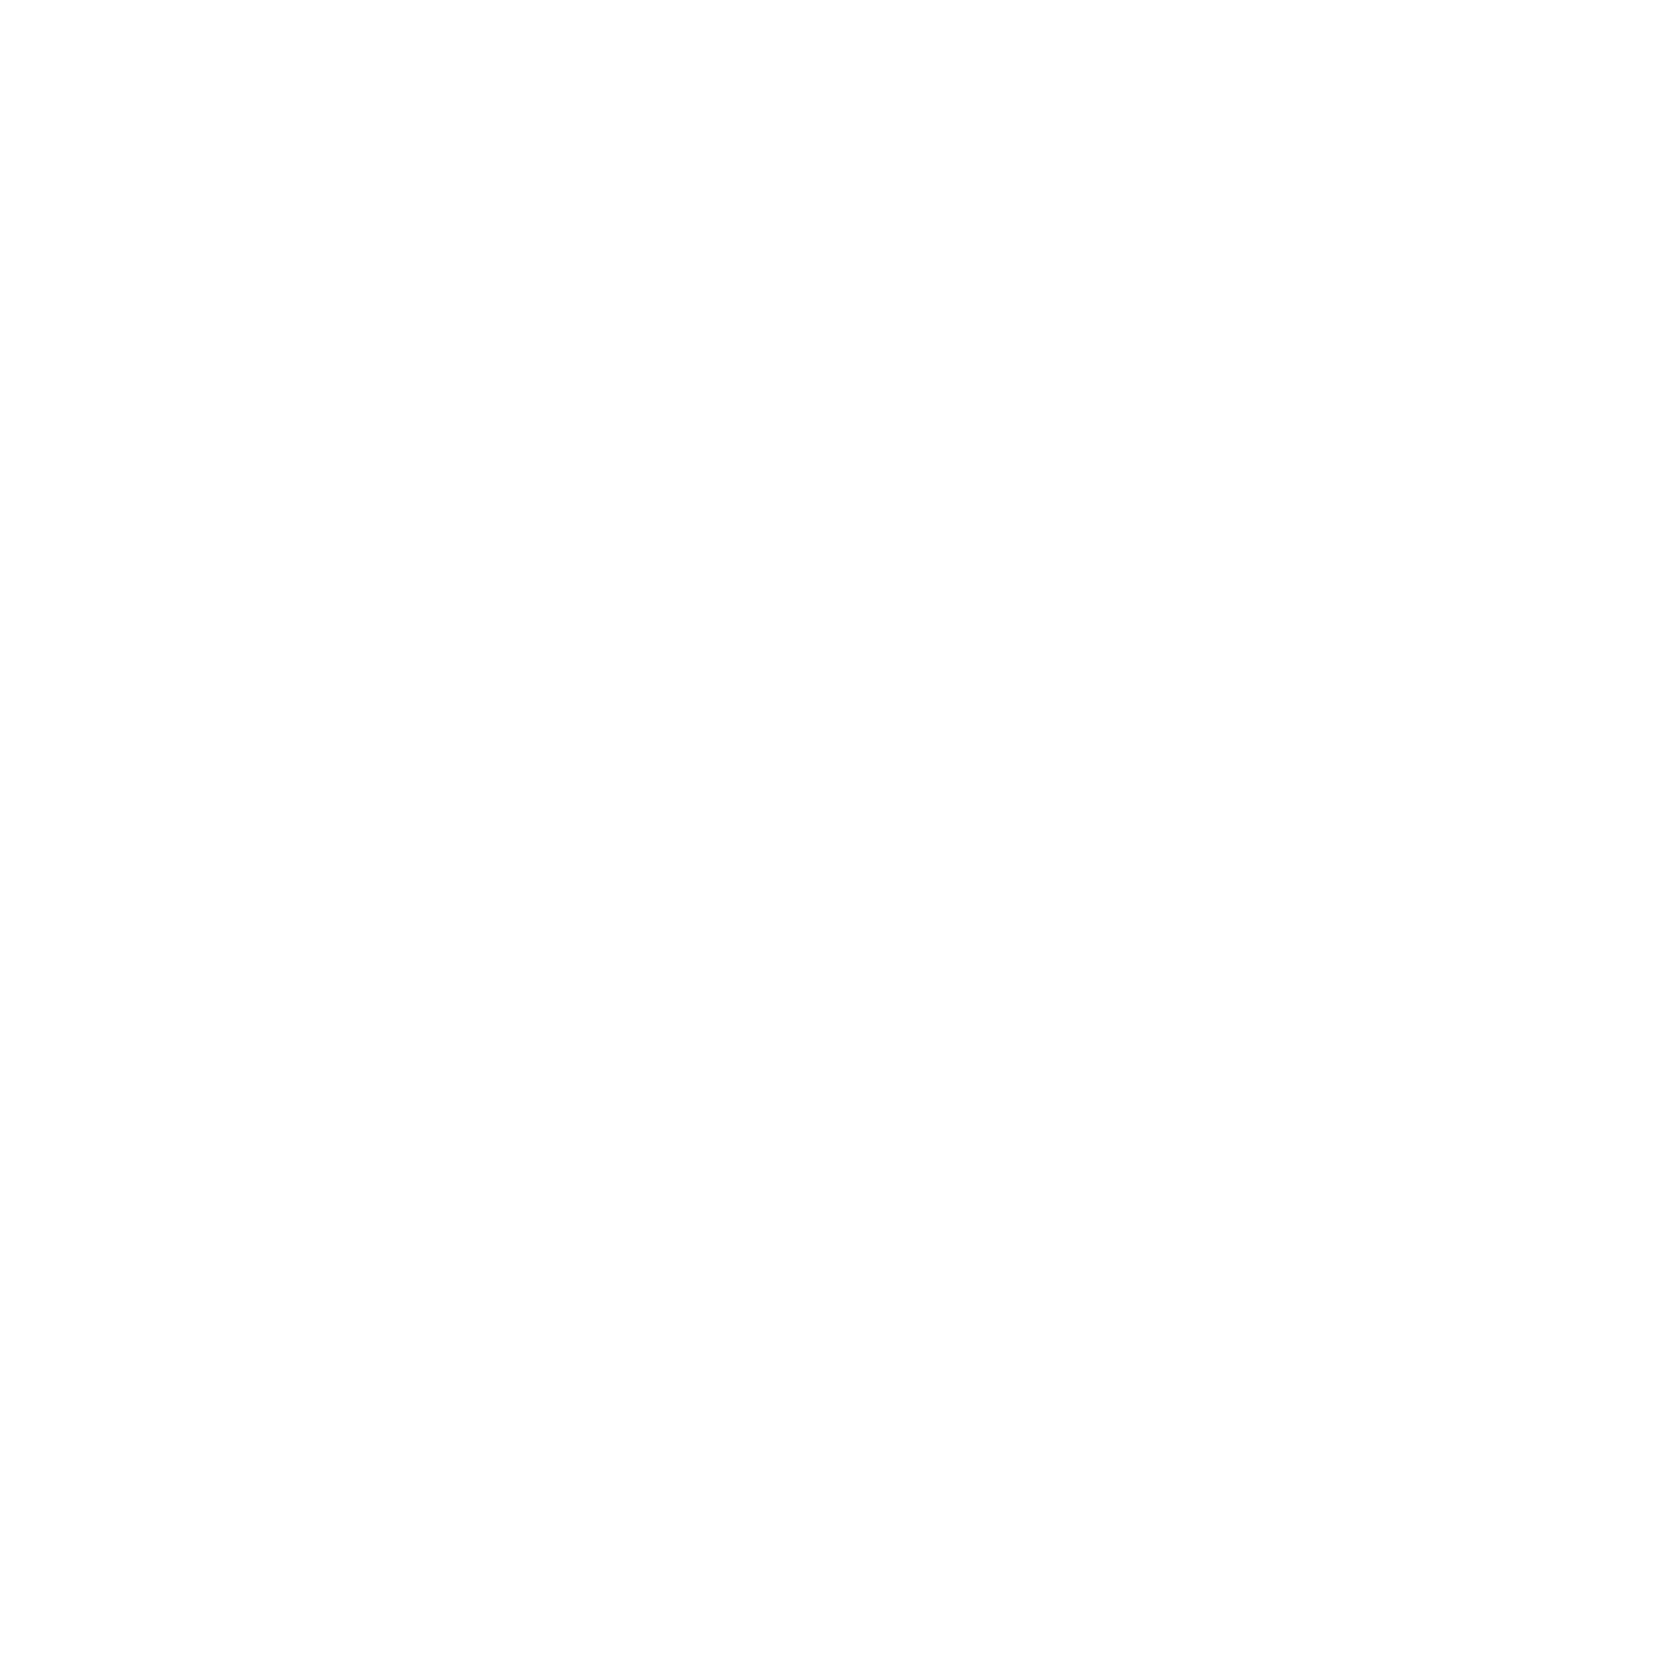 мастера Жак Дессанж Dessange портрет руководителя съемка директора фото персонала сотрудников съёмка генерального председателя менеджмента управляющего бизнес-портрет бизнесфото москва сайт контент